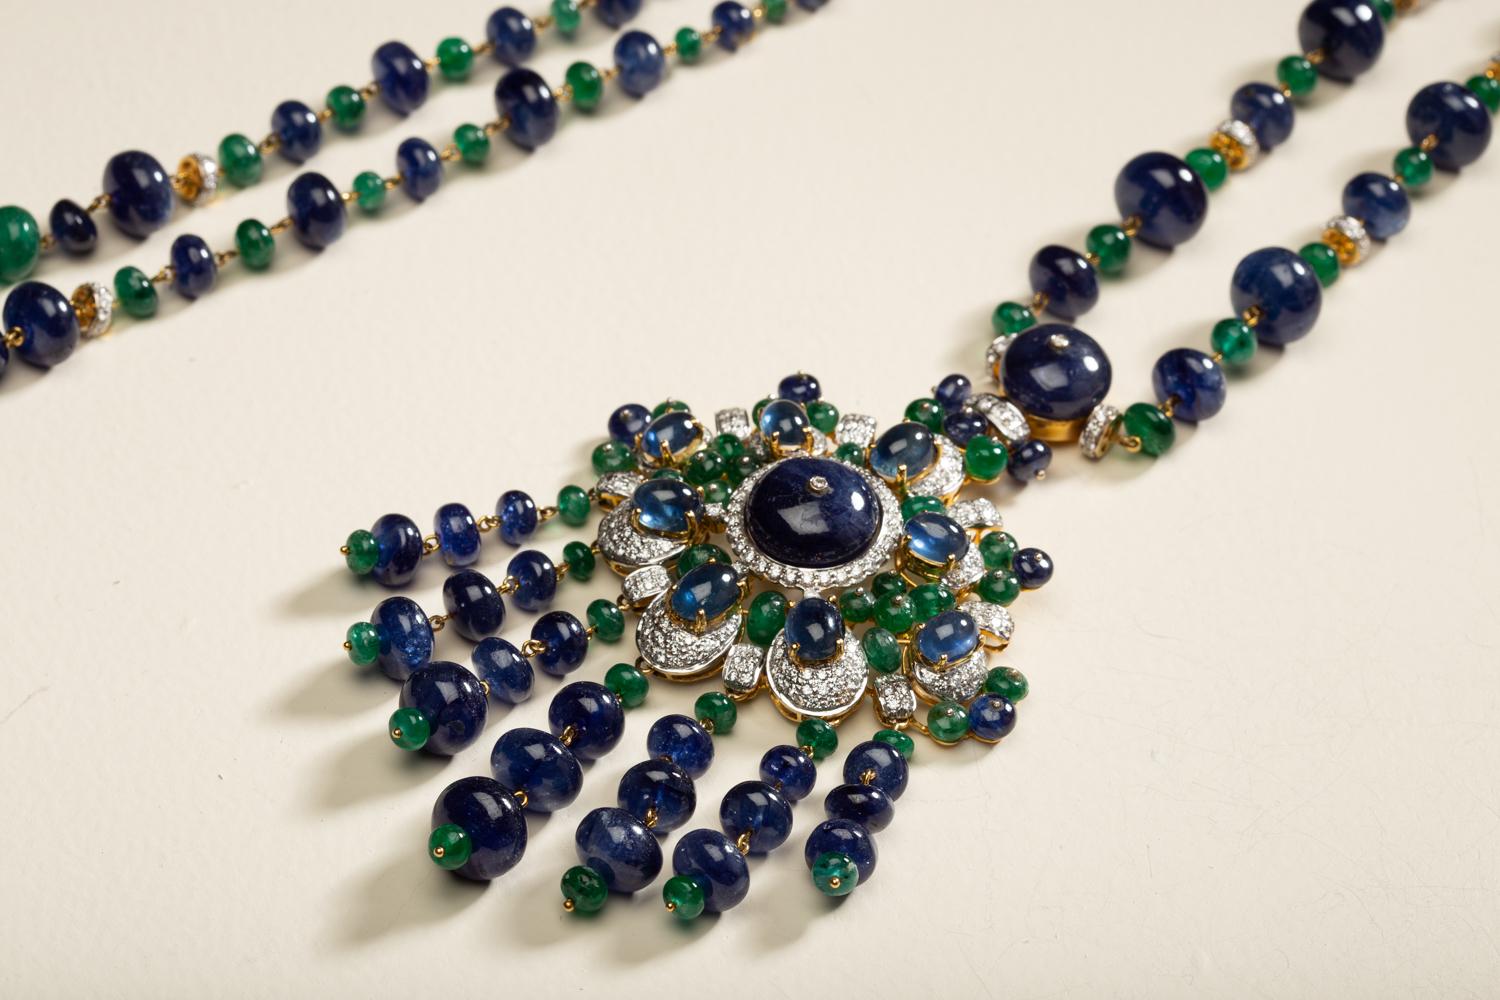 Halskette mit Pfauenmotiv 

7,78 Karat Diamanten, 97,61 Karat Smaragde und 548,89 Karat blaue Saphire, gefasst in 18kt Gold. 

Kostenloser Versand weltweit